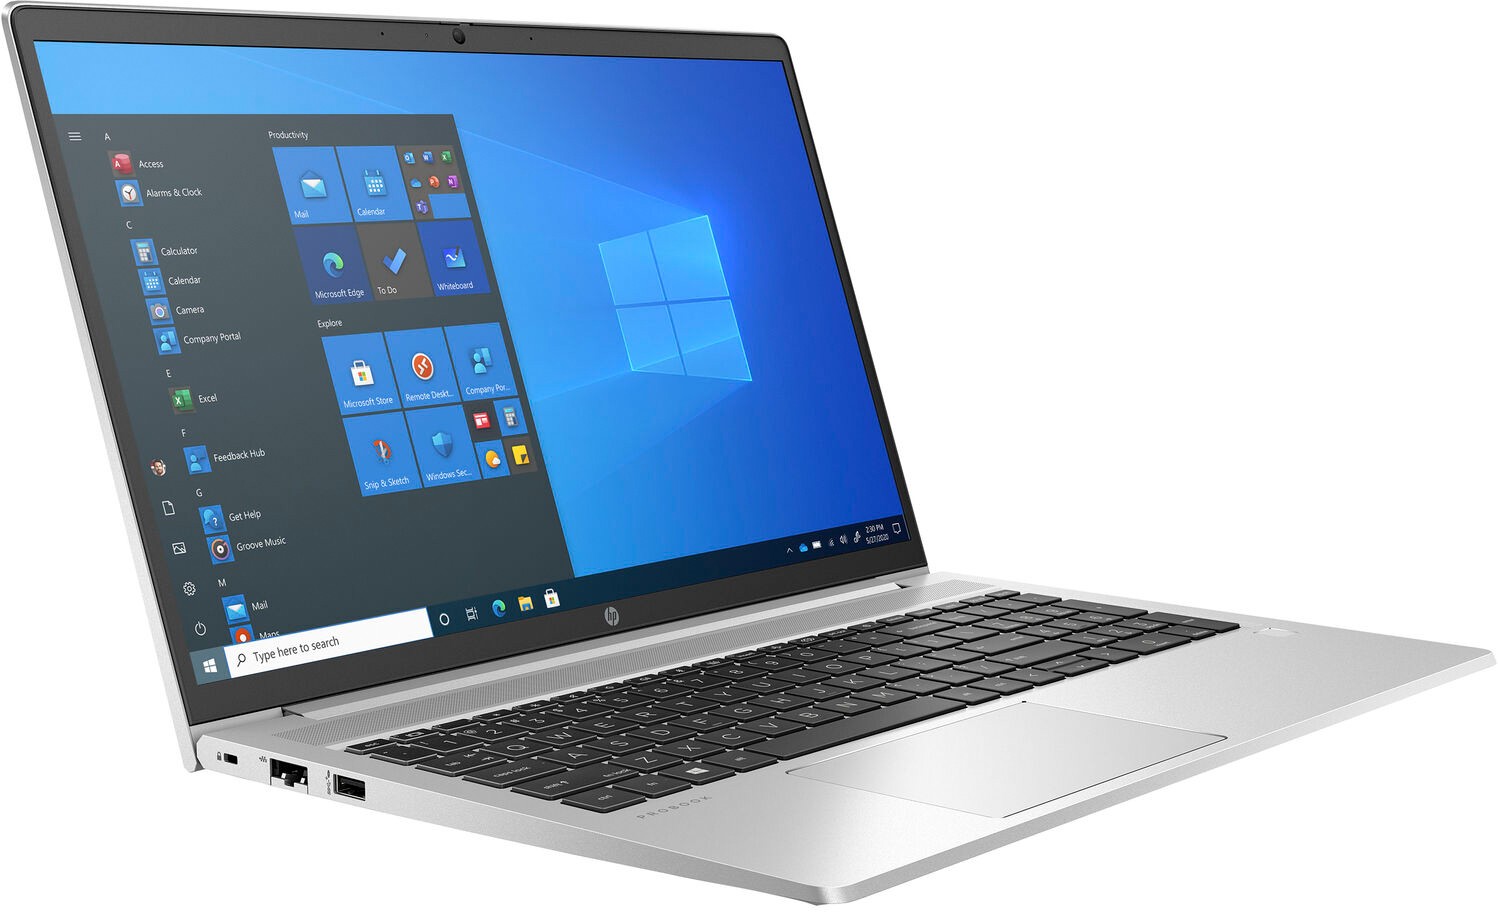 Ноутбук HP ProBook 450 G8 Core i7-1165G7 2.8GHz 15.6" FHD (1920x1080) AG,16Gb DDR4(1),512Gb SSD,45Wh LL,No FPR,1.8kg,1y,Silver,Win10Pro-39432